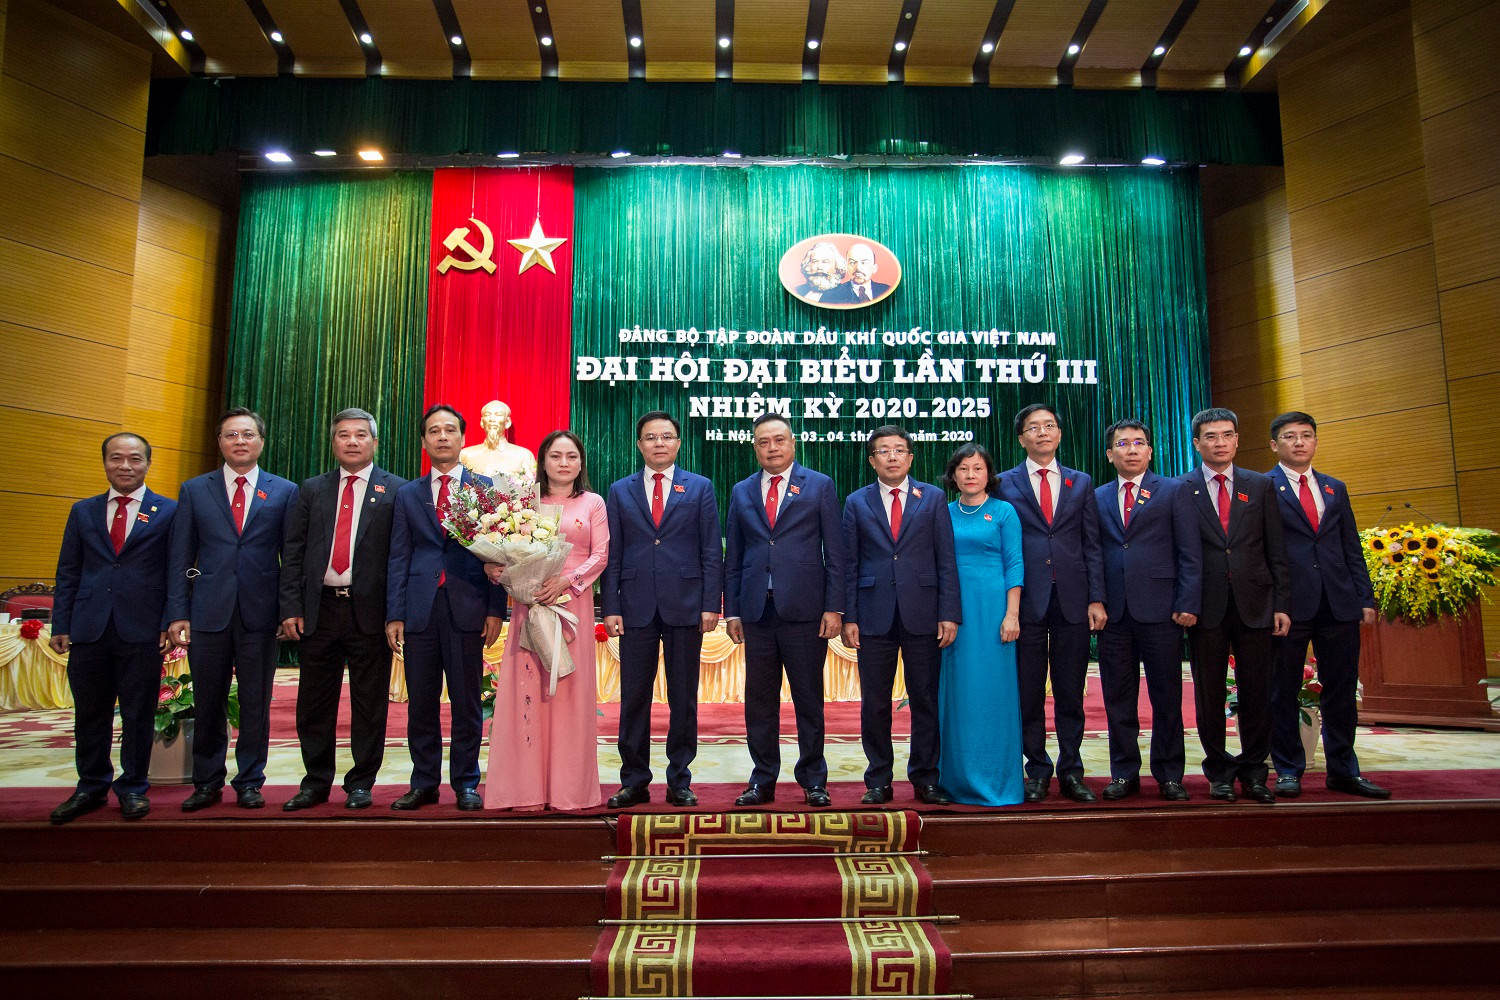 Đại hội đại biểu Đảng bộ Tập đoàn Dầu khí Quốc gia Việt Nam  lần thứ III, nhiệm kỳ 2020 – 2025 thành công tốt đẹp